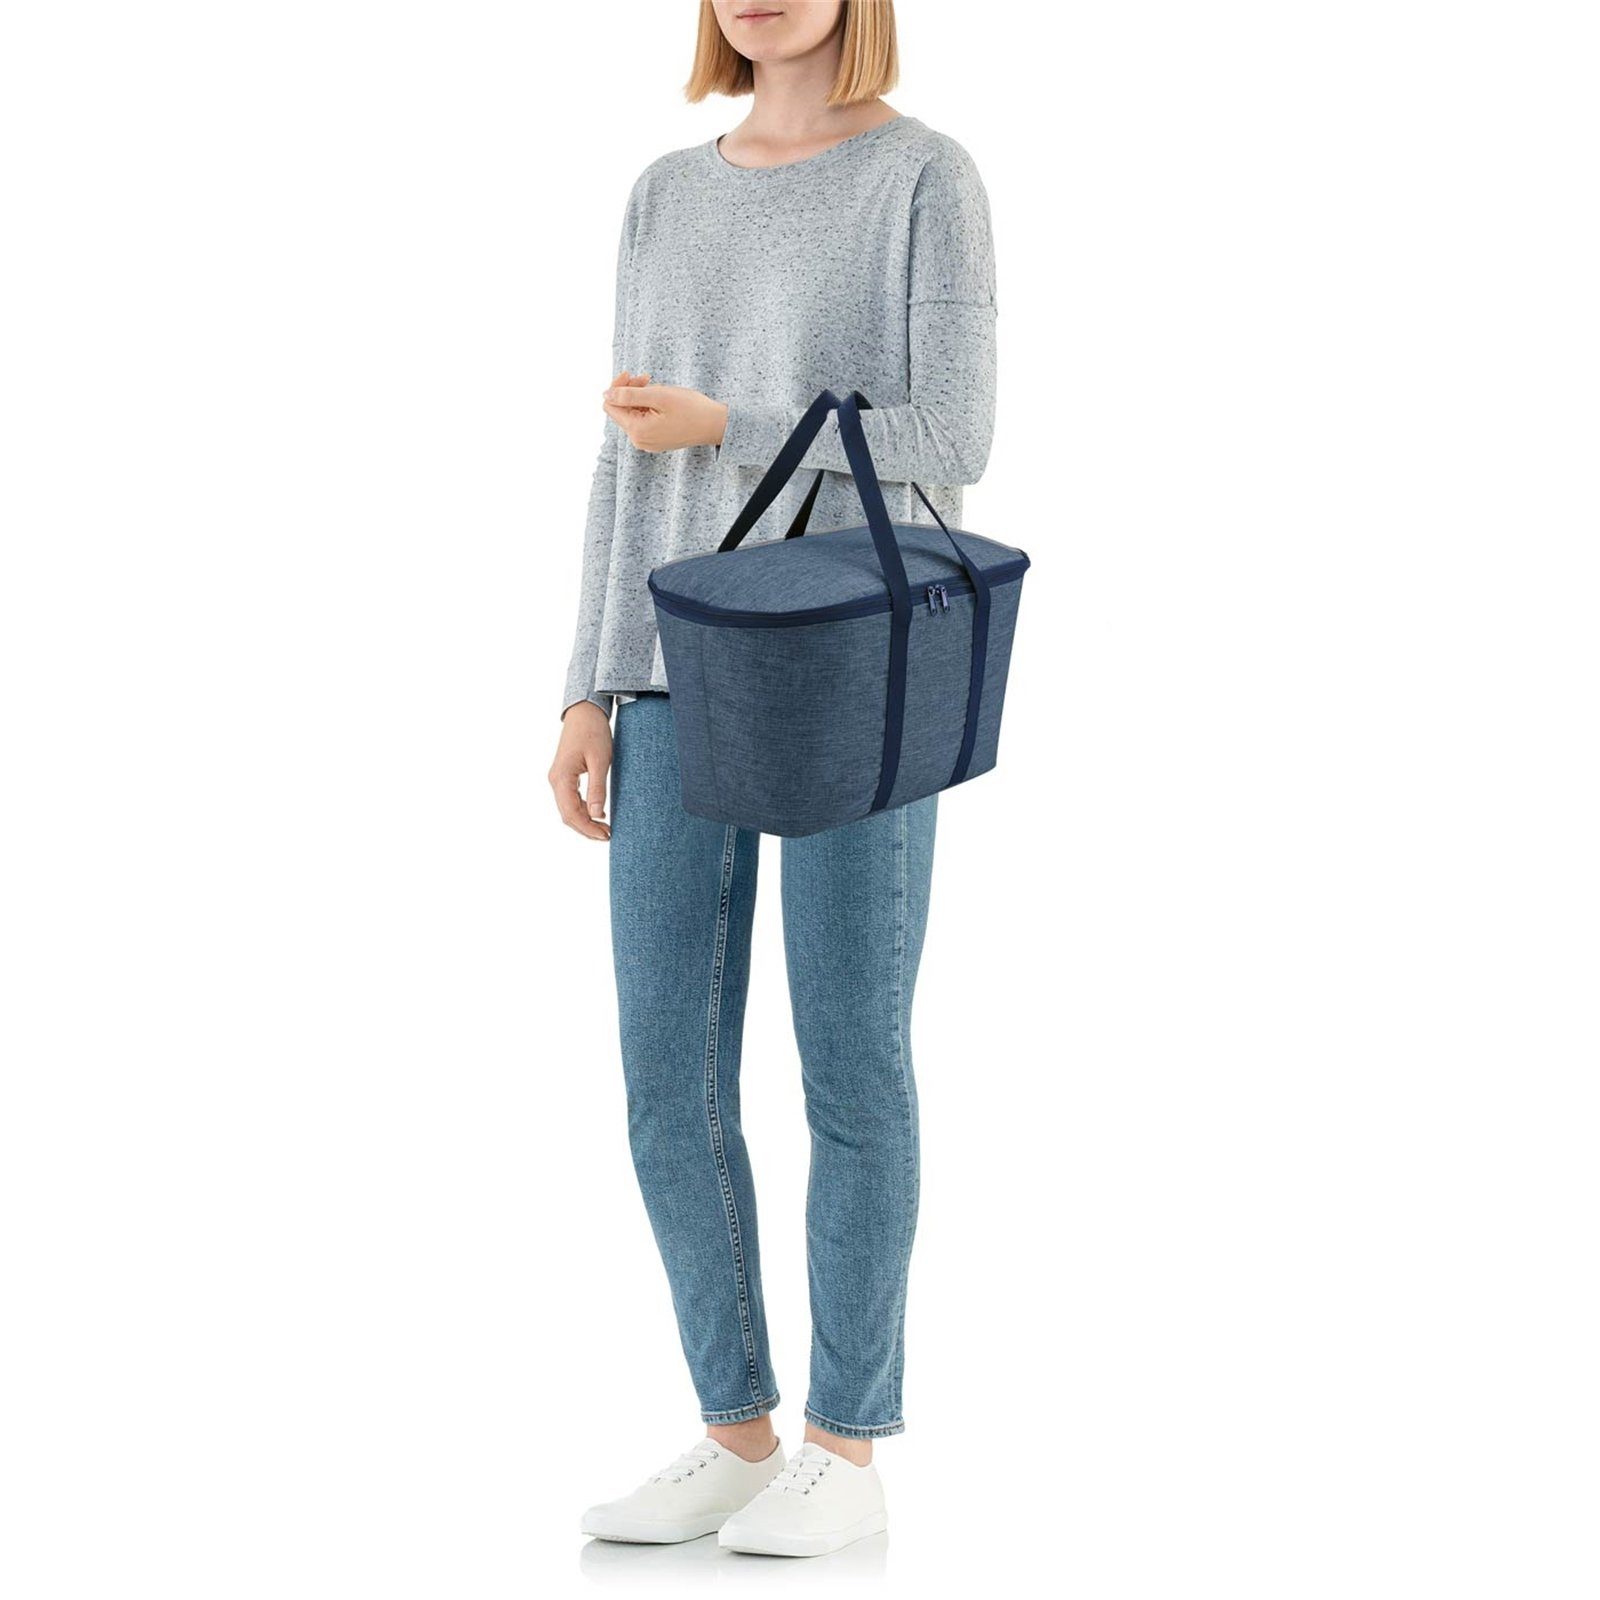 REISENTHEL® Aufbewahrungstasche Kühltasche coolerbag twist blue